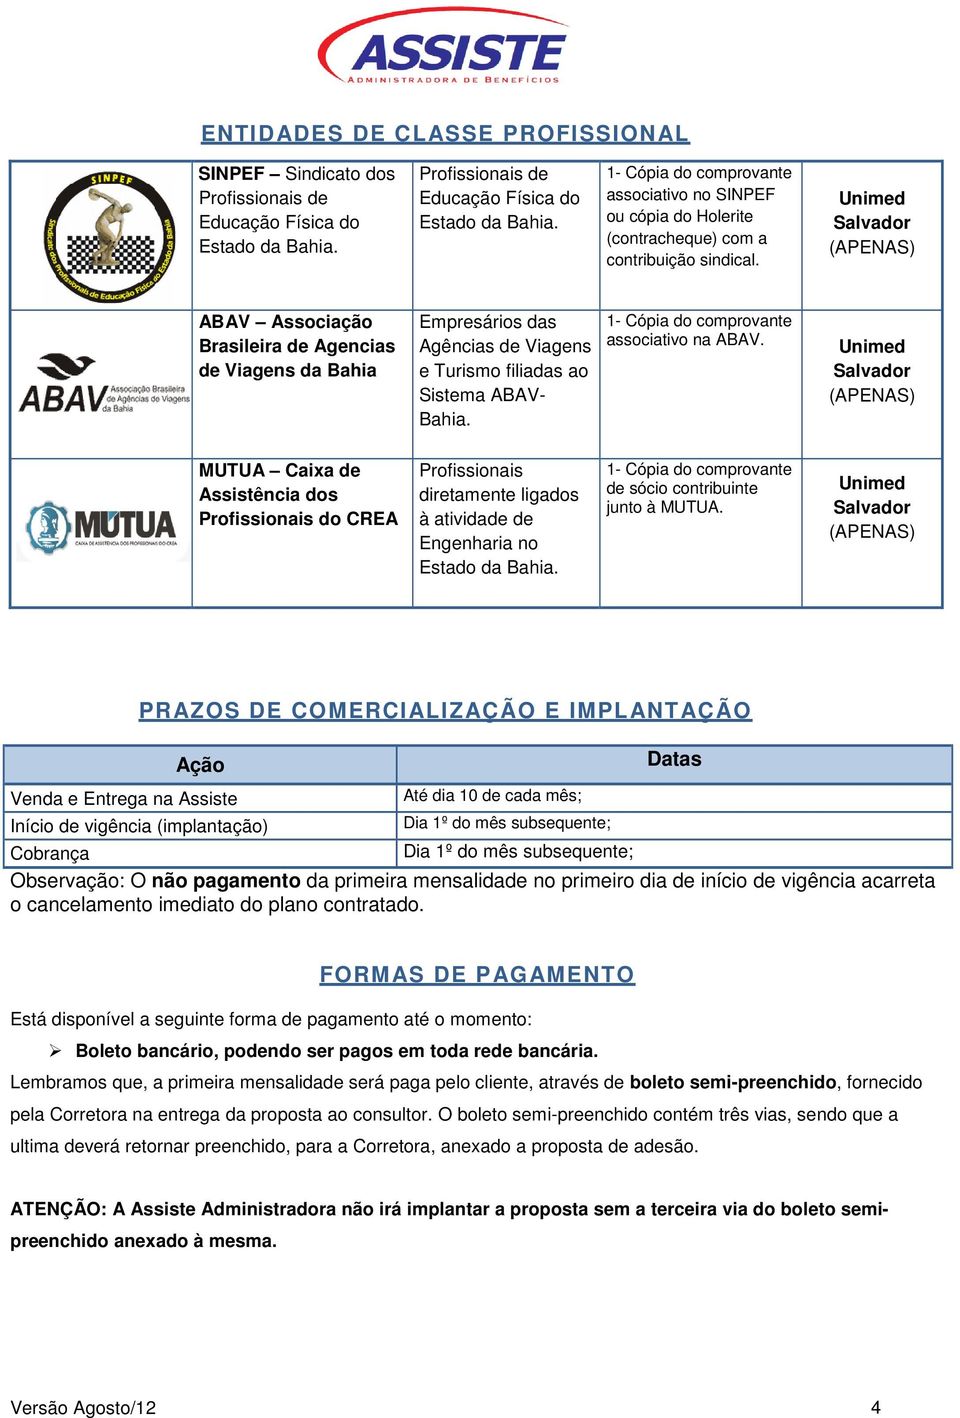 (APENAS) MUTUA Caixa de Assistência dos Profissionais do CREA Profissionais diretamente ligados à atividade de Engenharia no Estado da Bahia. de sócio contribuinte junto à MUTUA.